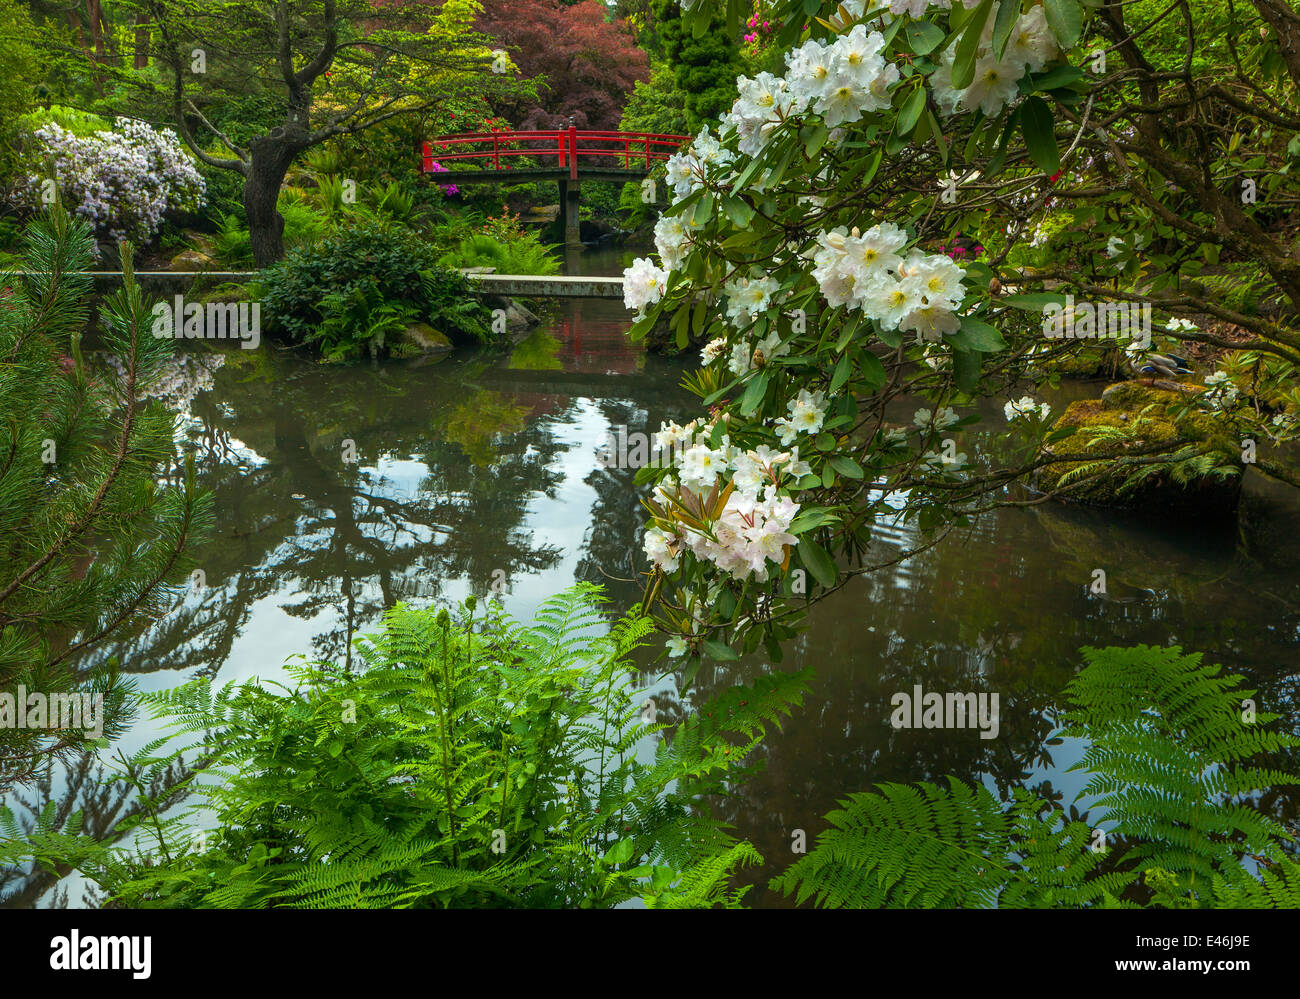 Jardin de Kubota, Seattle, WA : rhododendron floraison blanche et coeur Bridge Banque D'Images